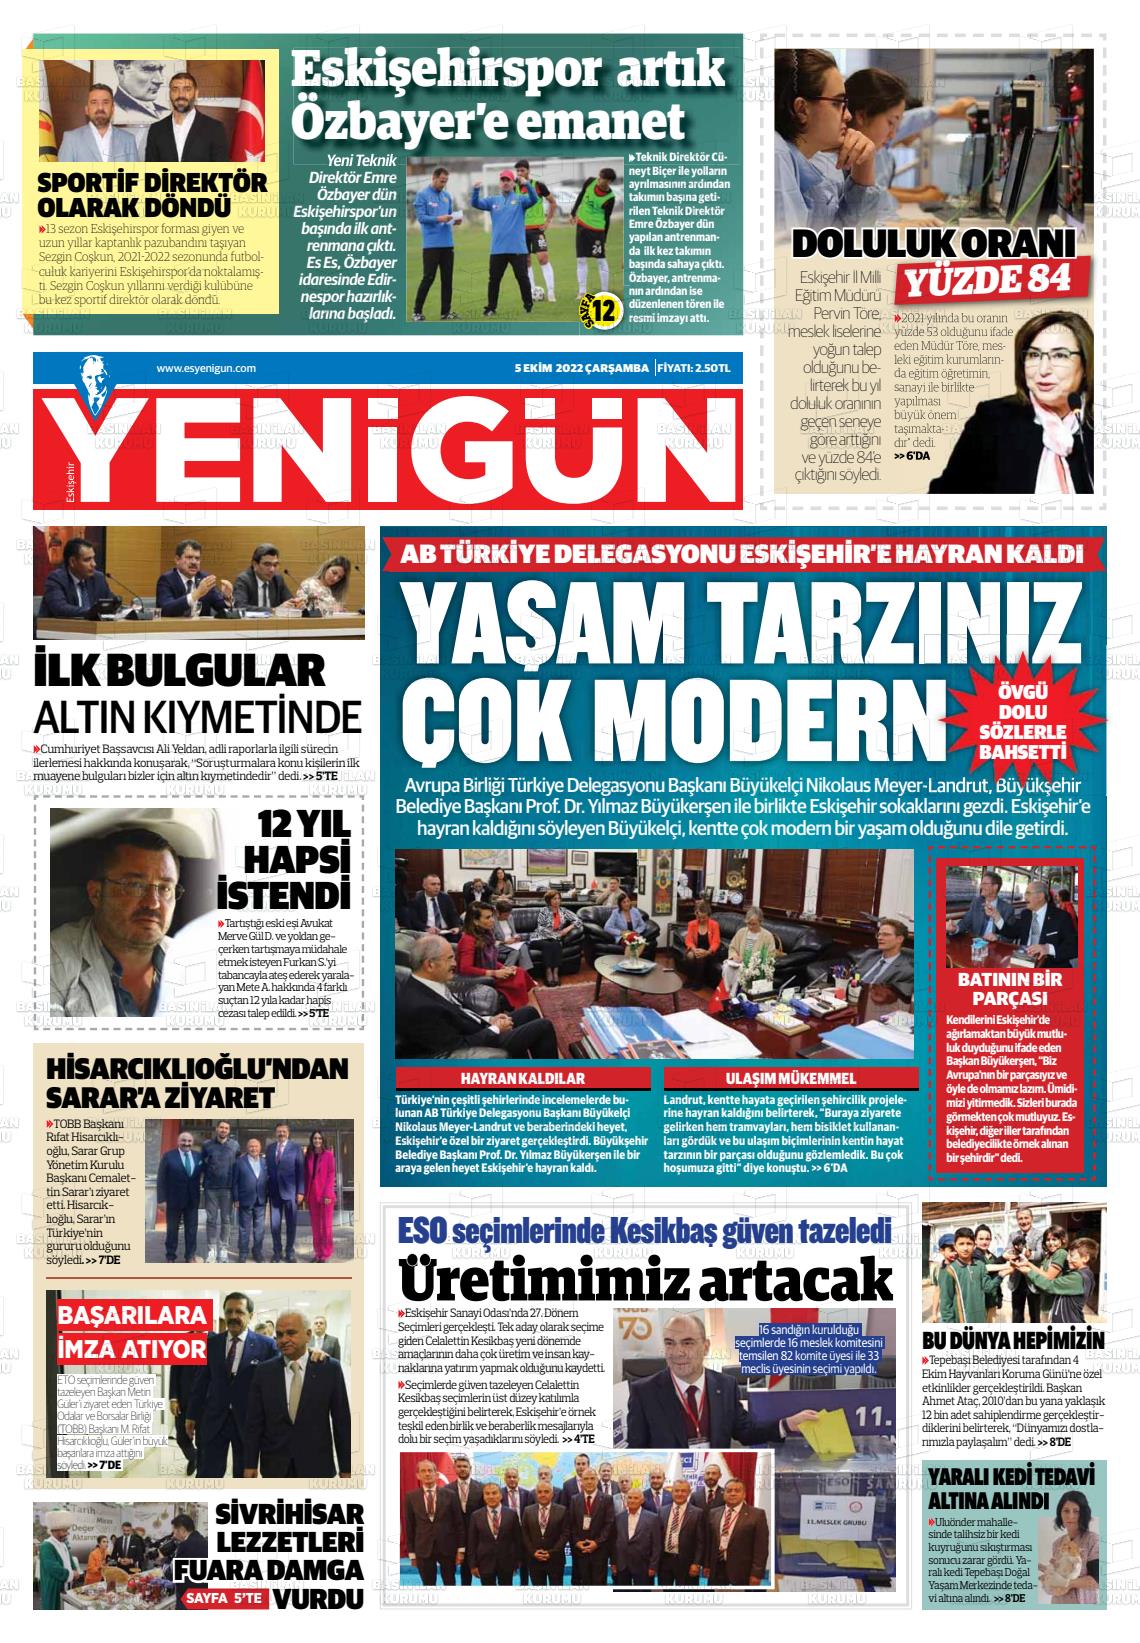 05 Ekim 2022 Eskişehir Yeni Gün Gazete Manşeti